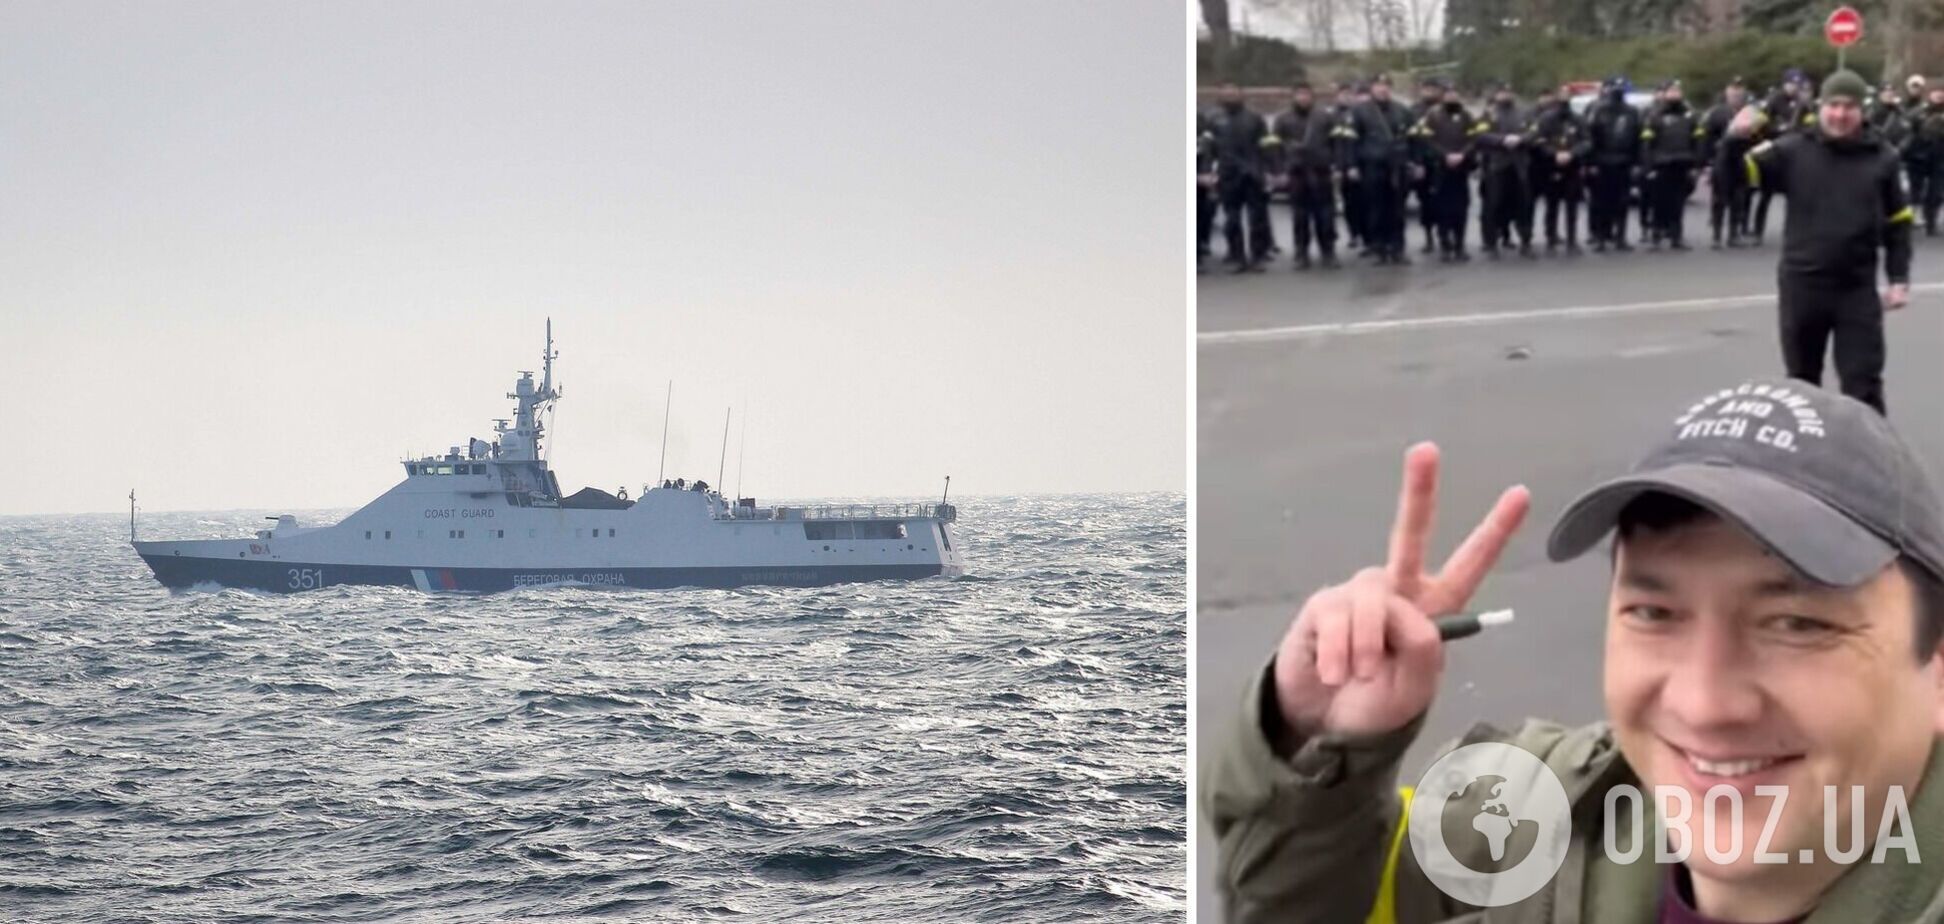 Полицейские прокричали знаменитую фразу о 'русском корабле'